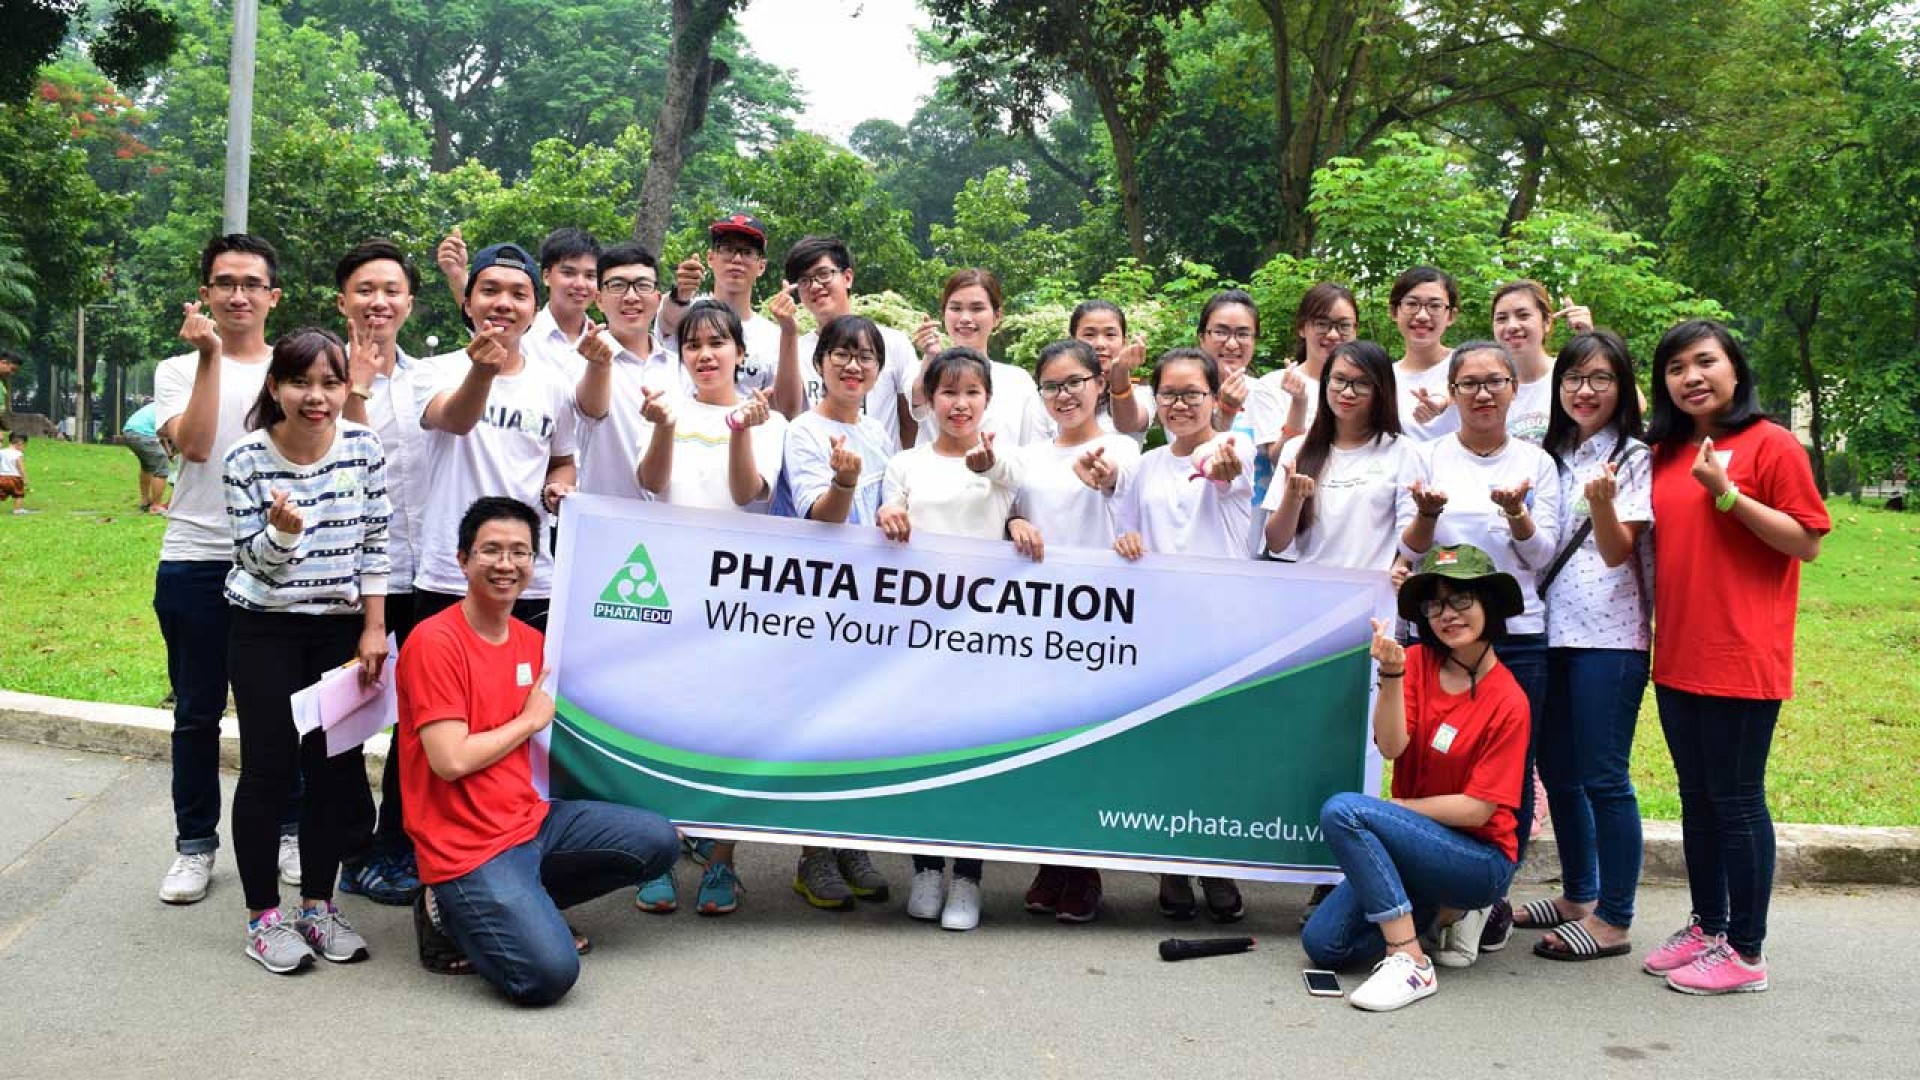 Giải mã lý do khiến 100% học viên hài lòng về trung tâm PHATA EDU